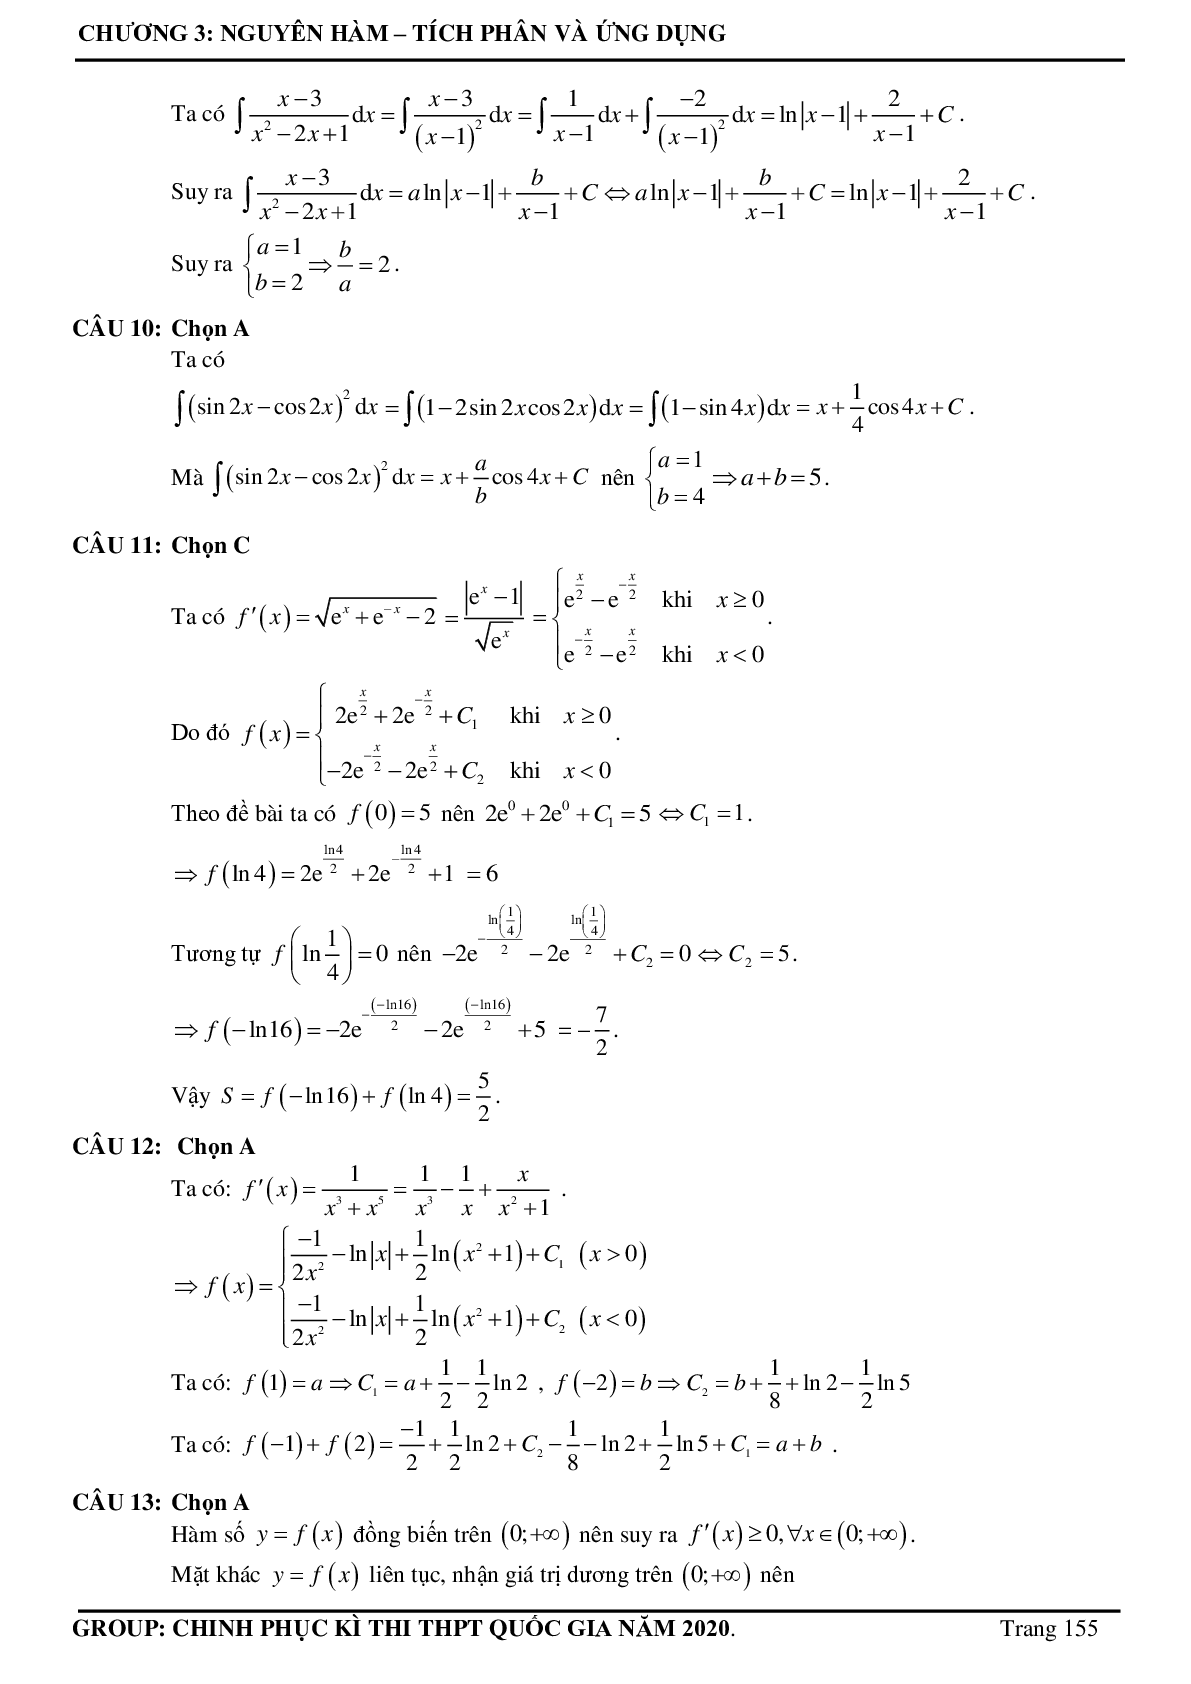 Tuyển chọn các bài toán Nguyên hàm - Tích phân Vận dụng cao thường xuất hiện trong đề thi - có đáp án chi tiết (trang 6)